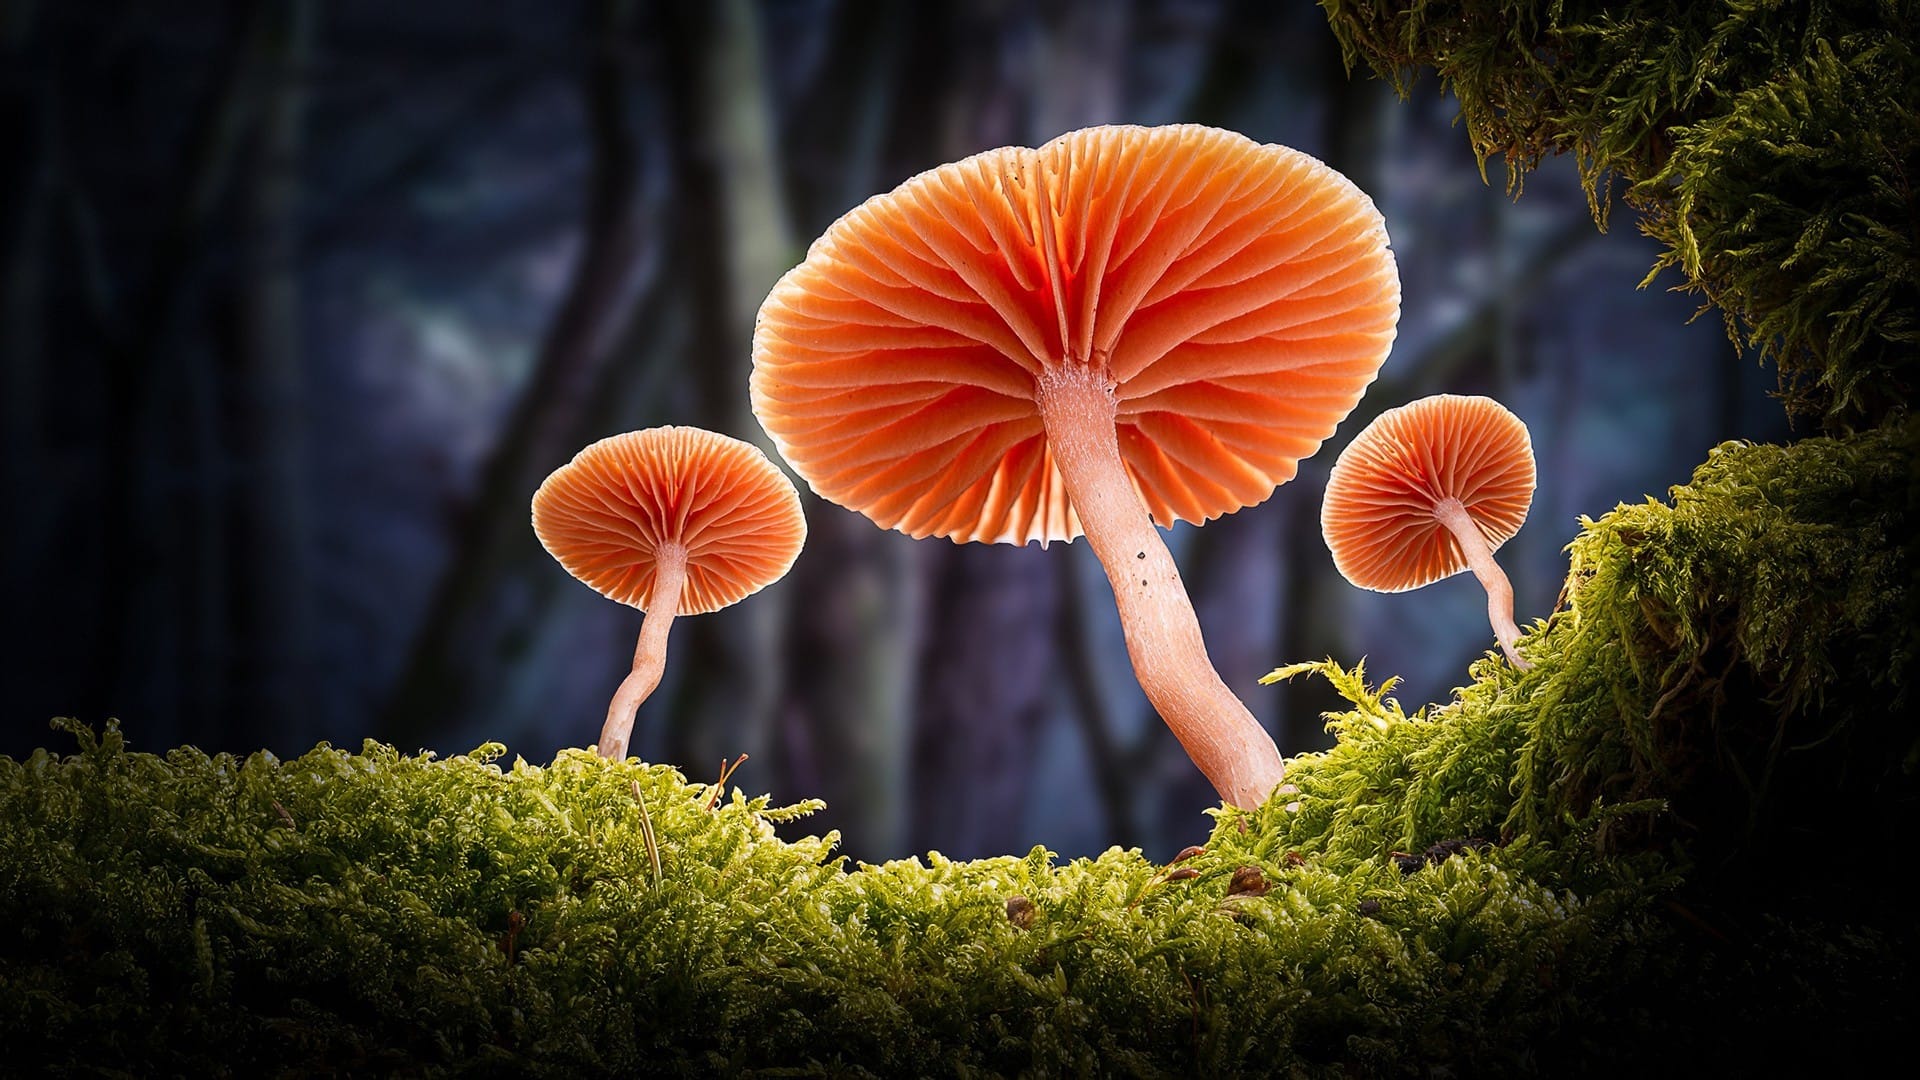 漂亮的野生蘑菇近距离拍摄唯美风格桌面大图